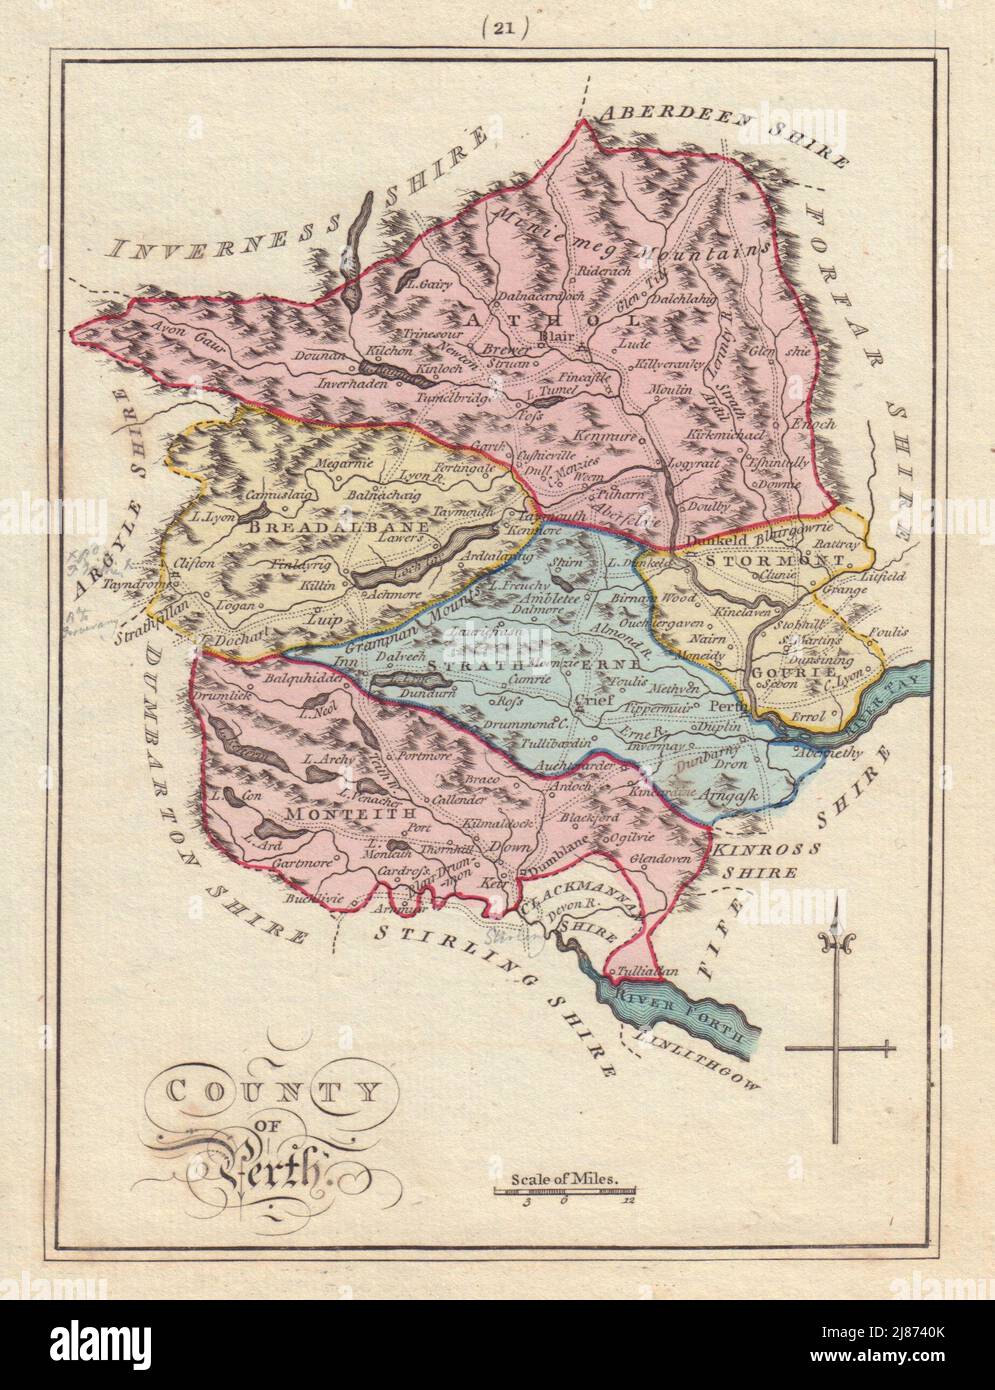 Condado de Perth. Perthshire. SAYER / ARMSTRONG 1794 antiguo mapa gráfico Foto de stock